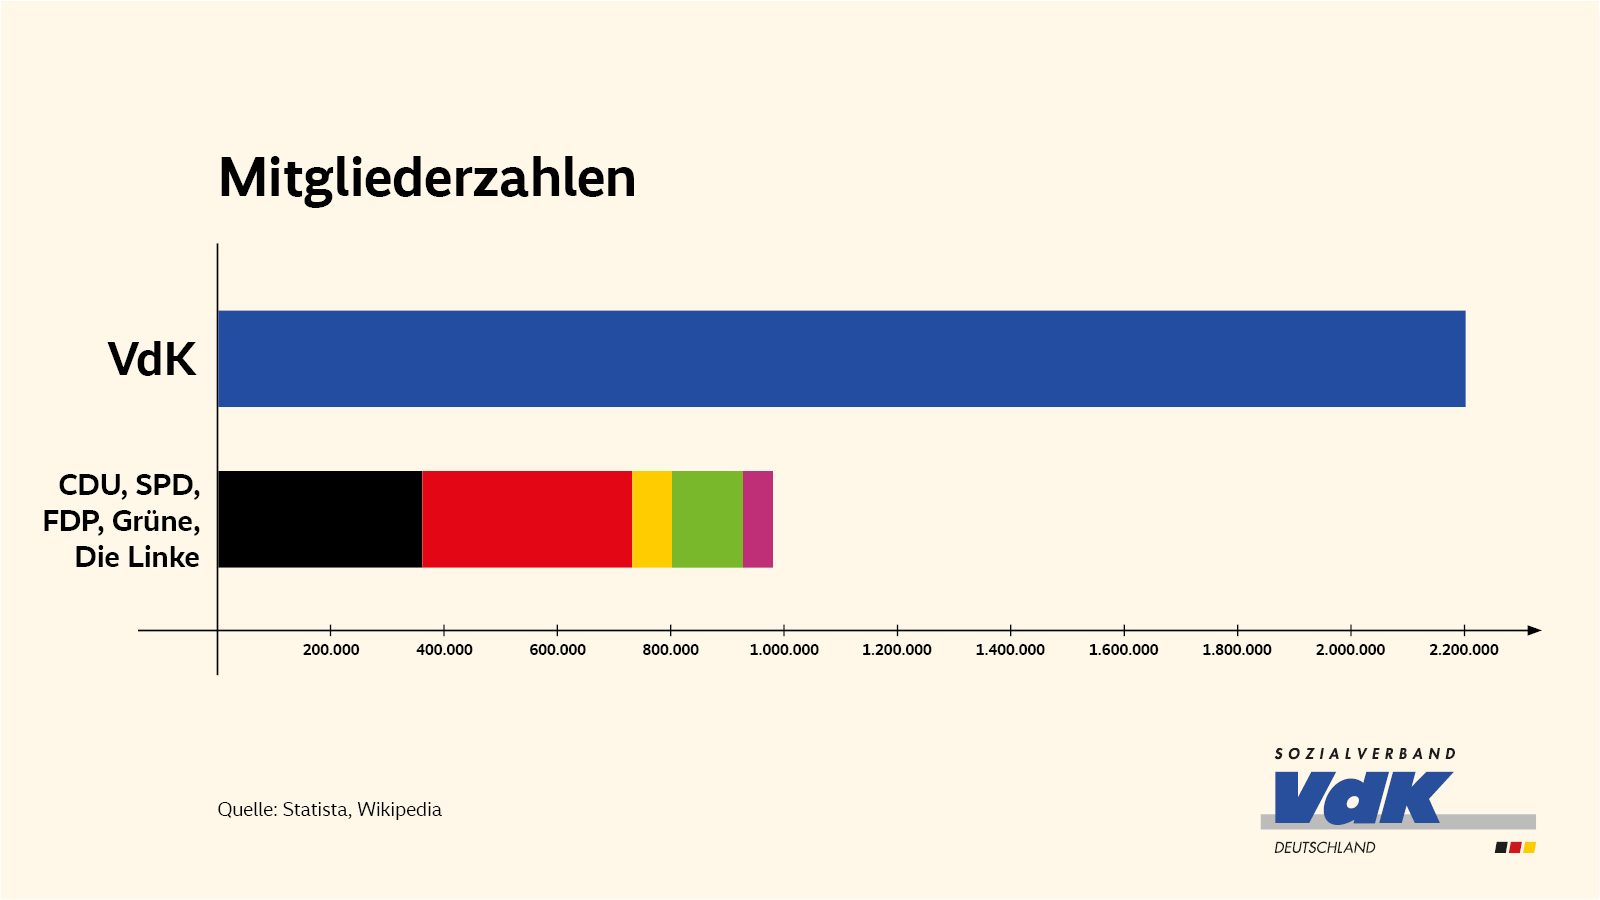 Die Grafik zeigt als Balkendiagramm, dass der VdK mehr Mitglieder hat (über 2,2 Millionen) als die Mitglieder aller Parteien im Bundestag zusammen (weniger als 1 Million).